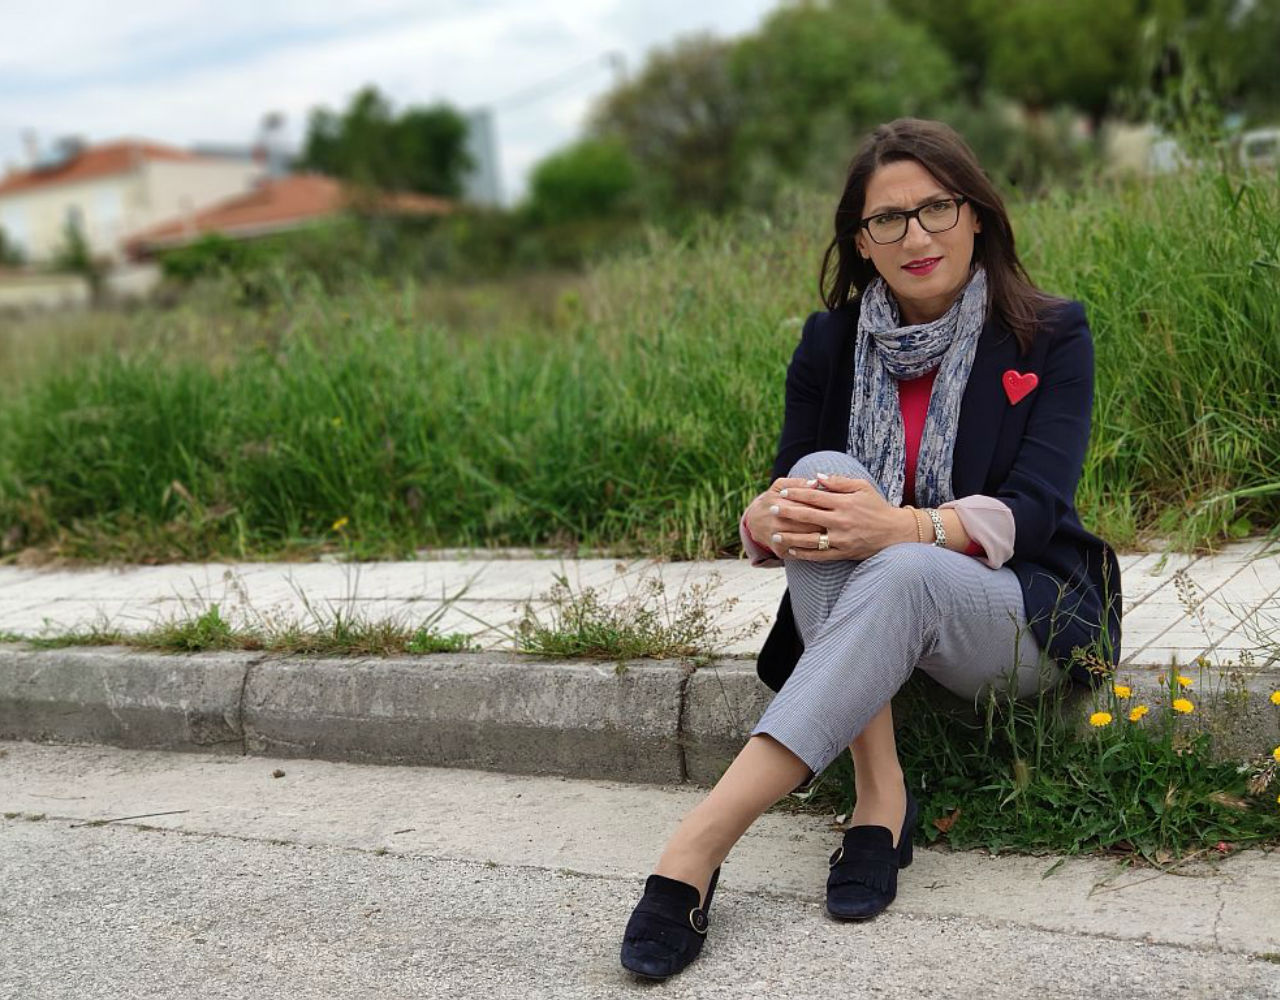 Μαρία Ανδρούτσου: Η Δήμαρχος του Αγίου Δημητρίου είναι μια γυναίκα που δεν κέρδισε μόνο τις εκλογές